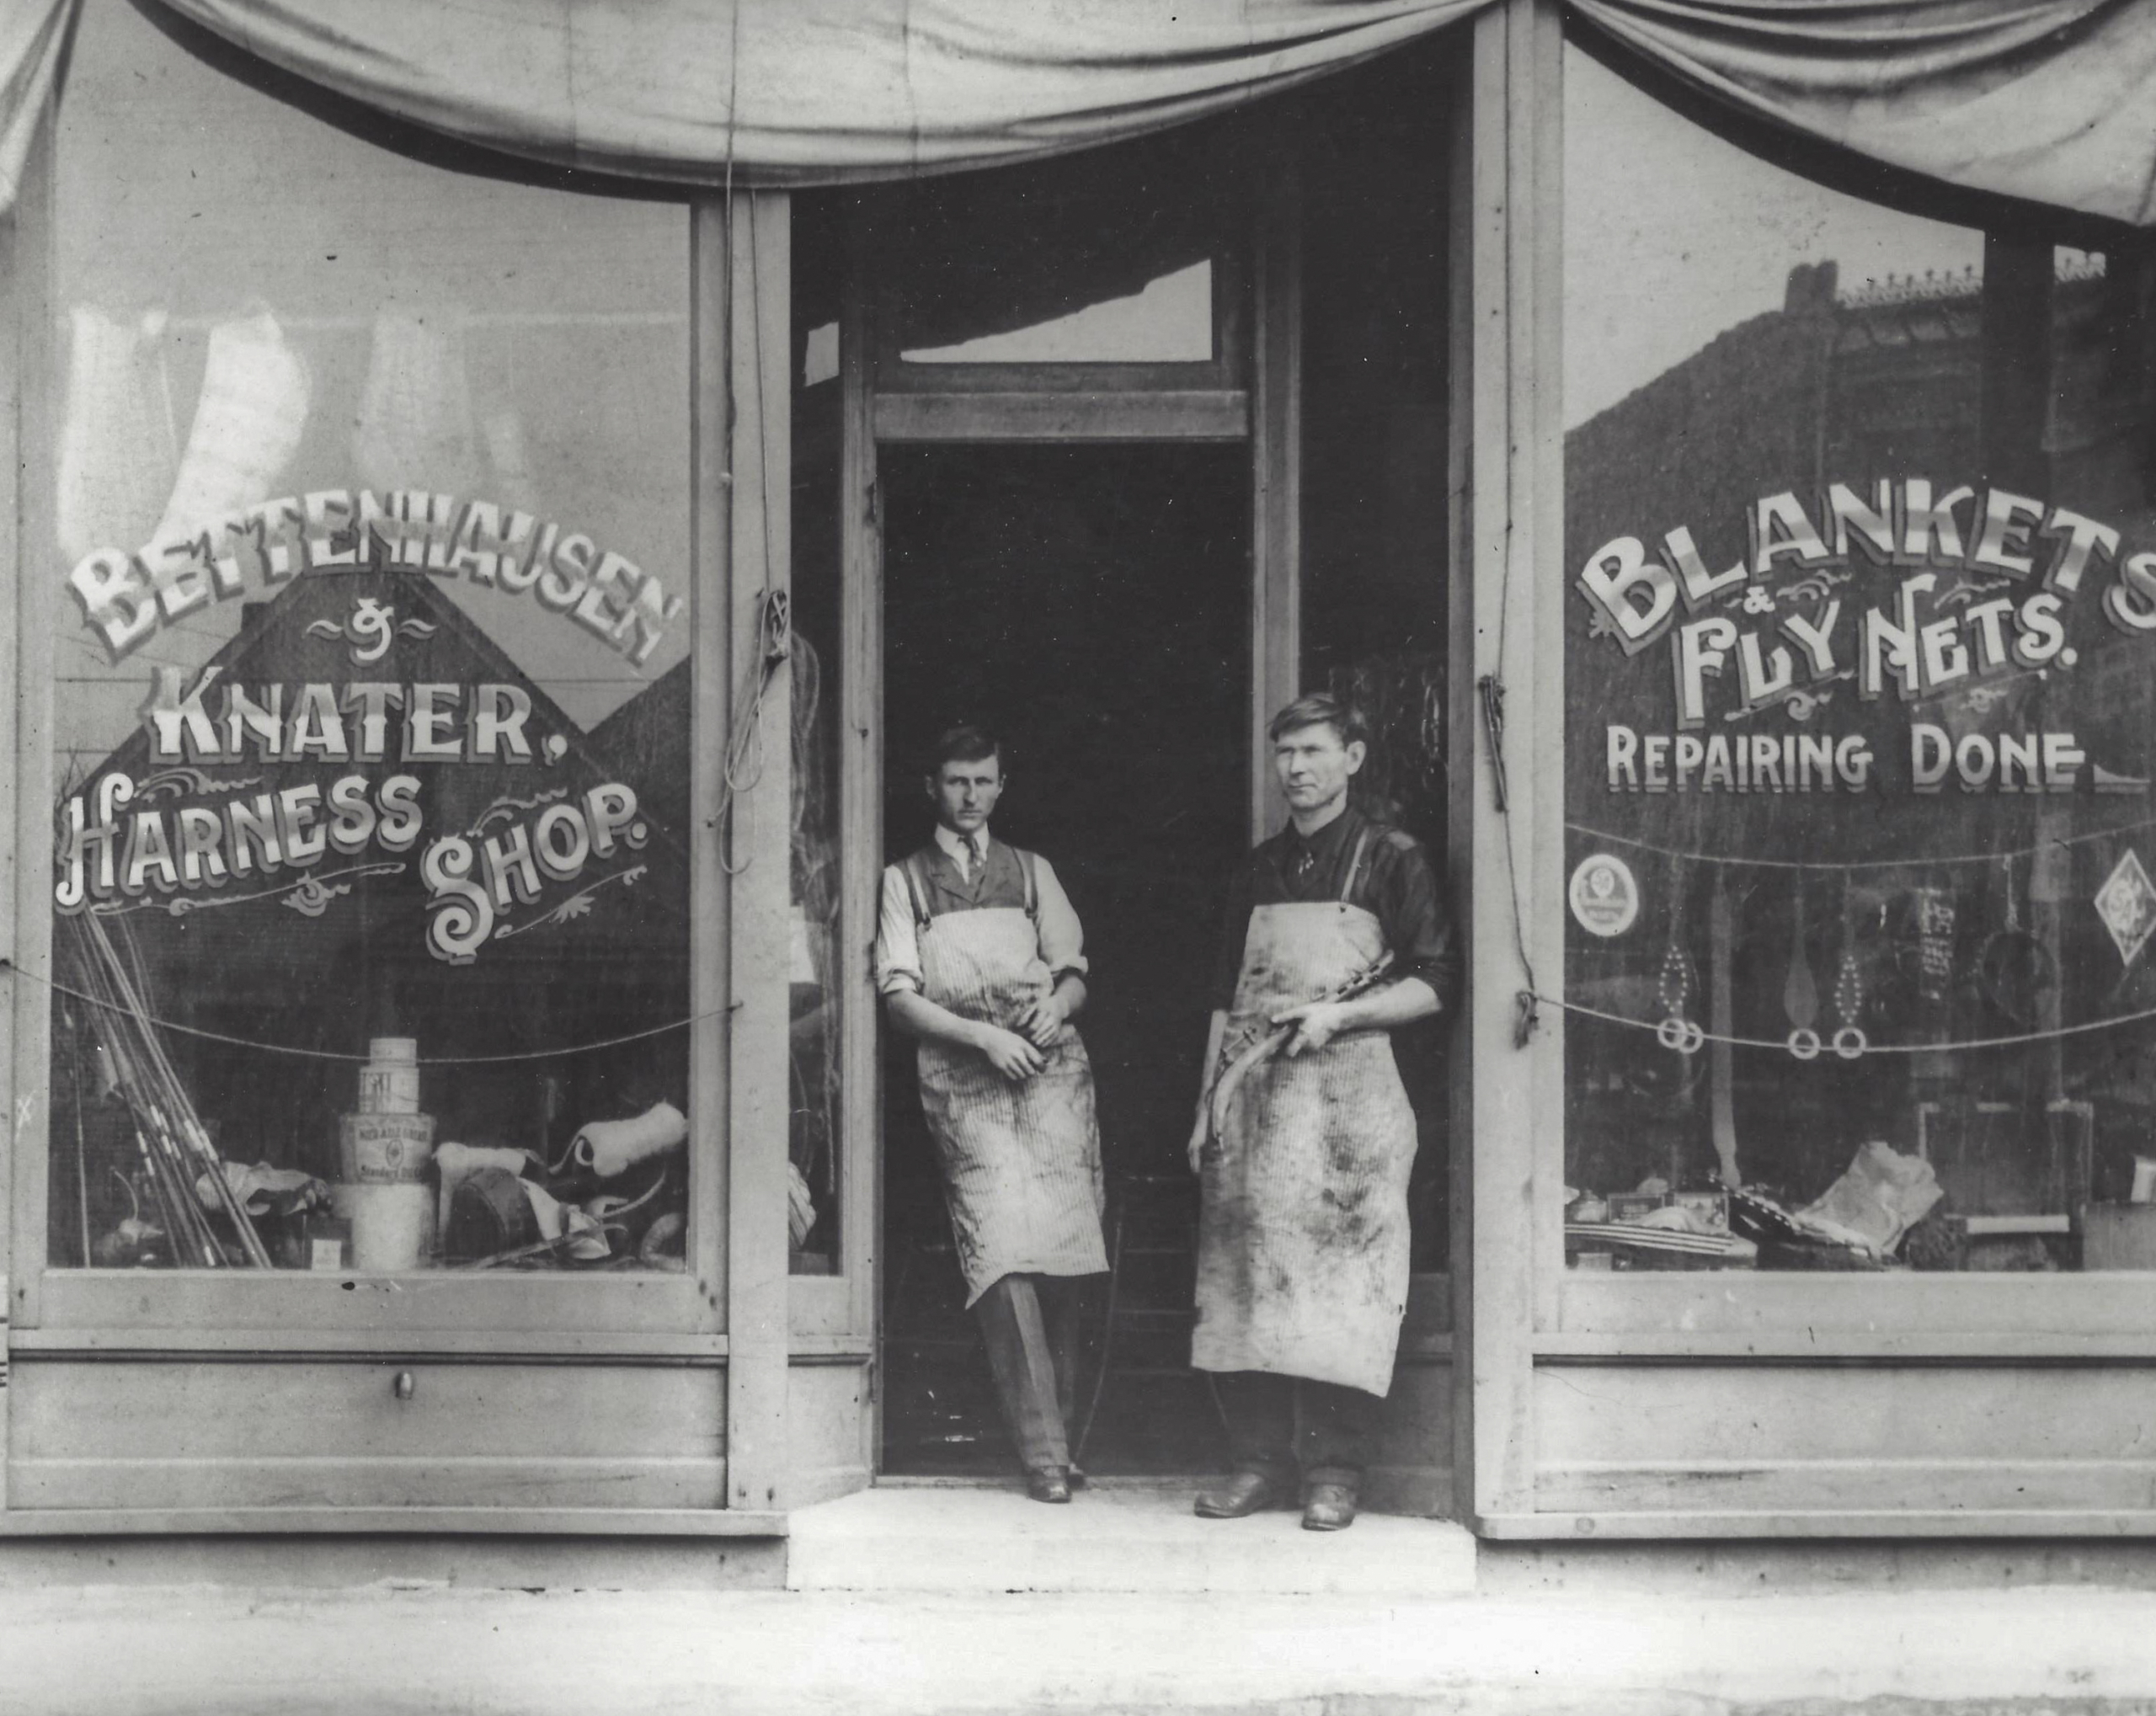 385 Business Misc Bettenhausen & Knater Harness Shop 1870